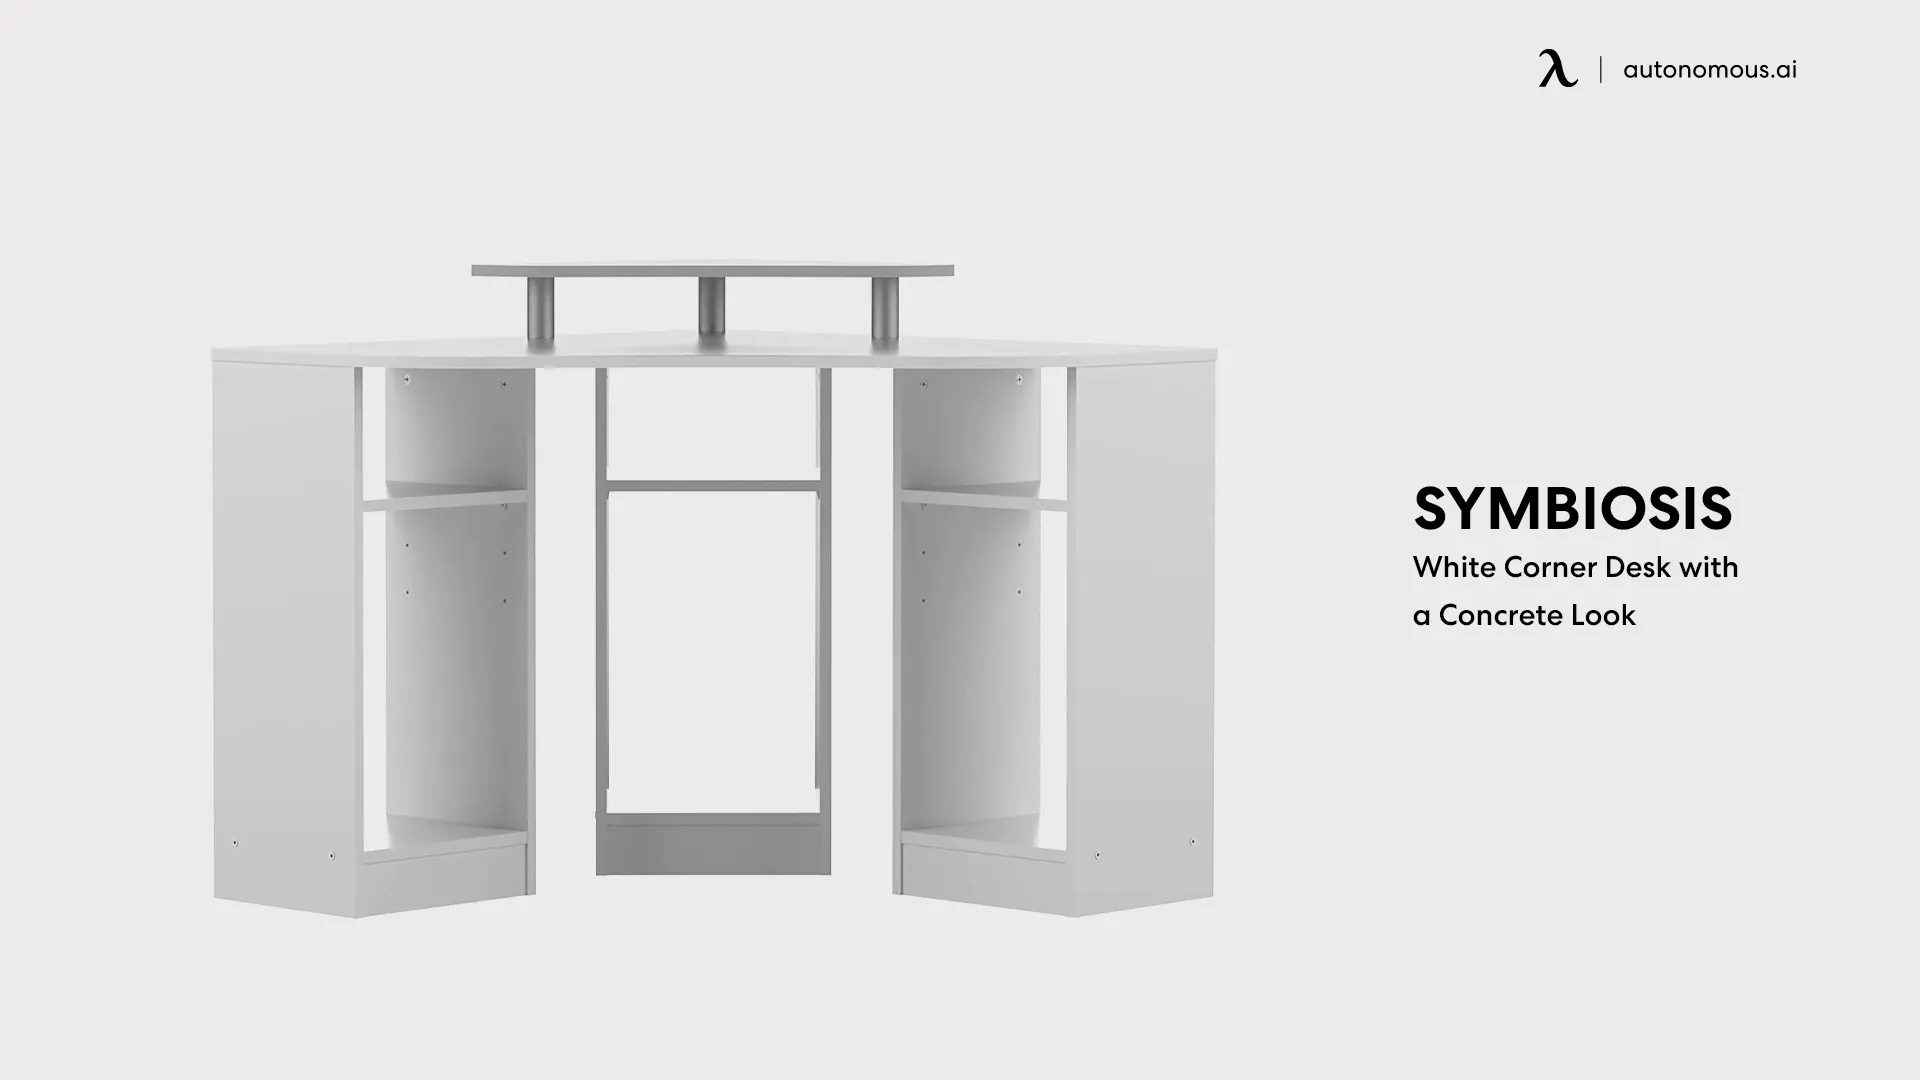 Symbiosis’ White Corner Desk with a Concrete Look